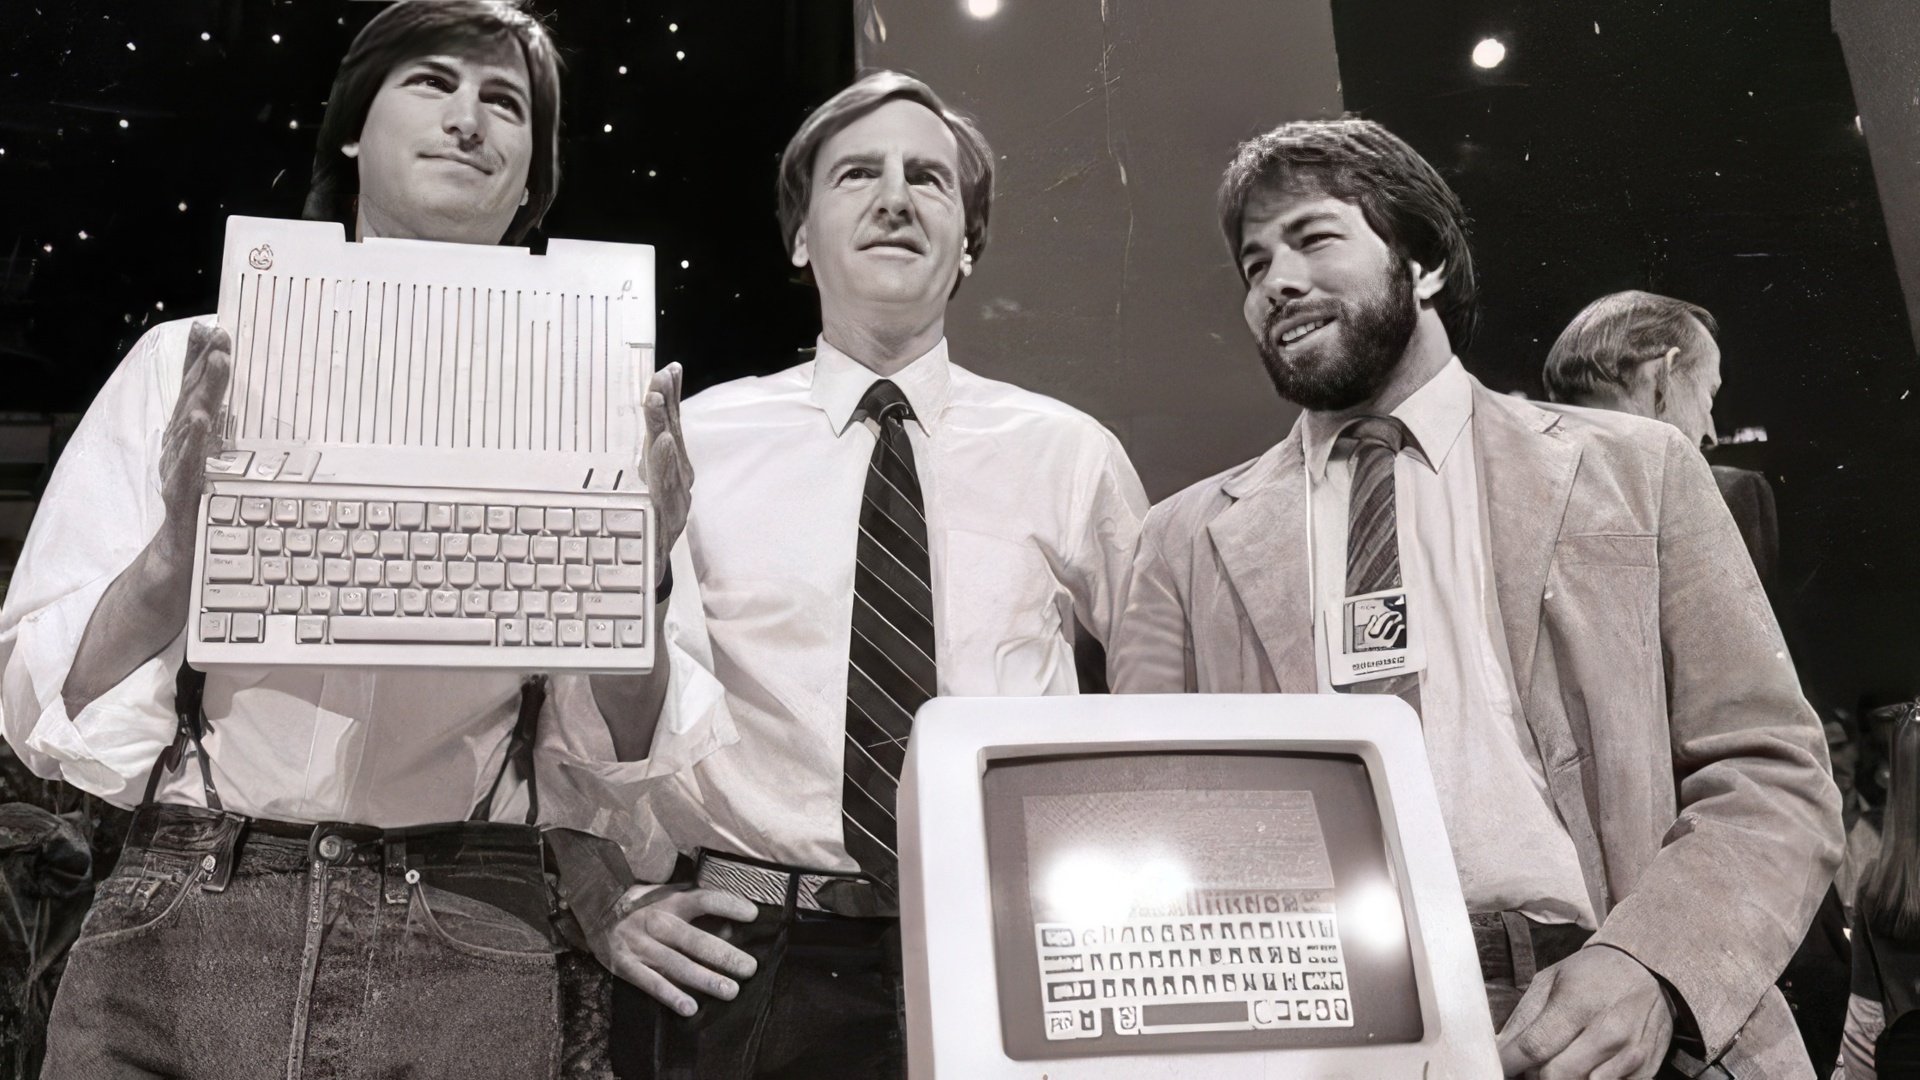 Steve Jobs, John Sculley, and Steven Wozniak